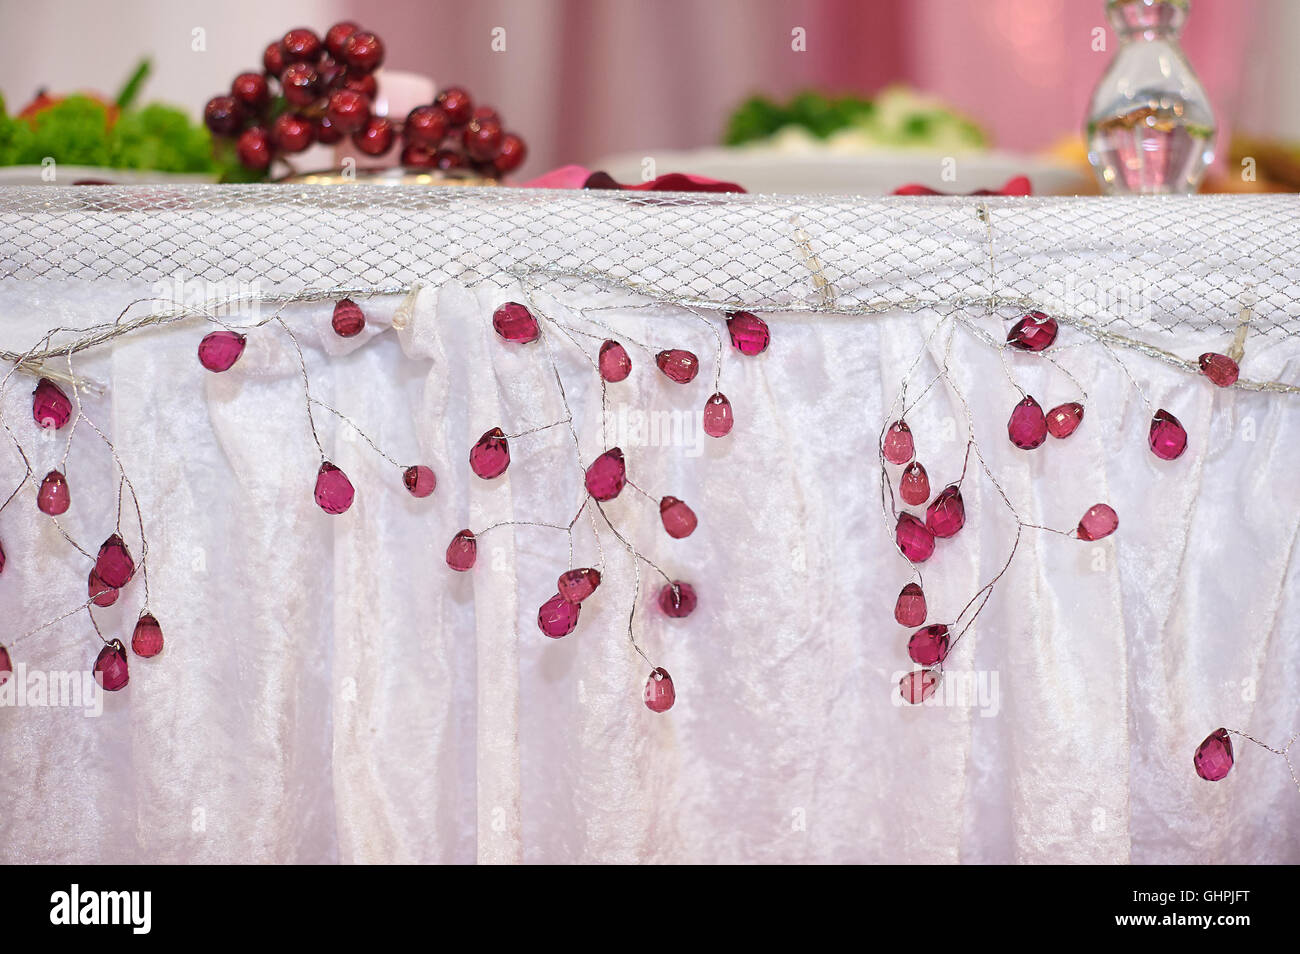 Table de mariage magnifiquement décoré de la jeune mariée et se toilettent Banque D'Images